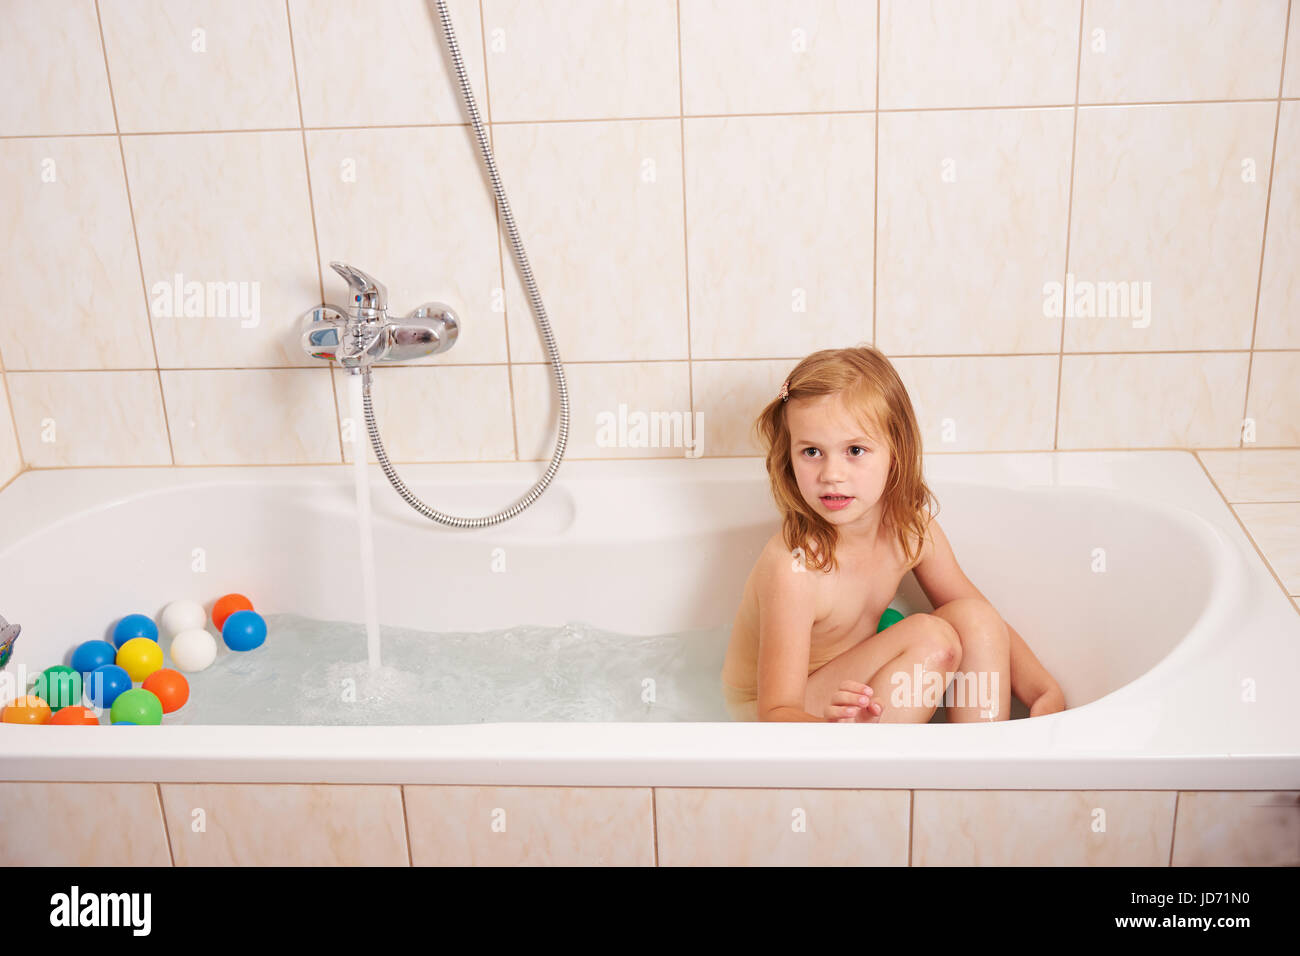 Ein Kleines Mädchen In Eine Badewanne Mit Farbigen Kugeln Spielen